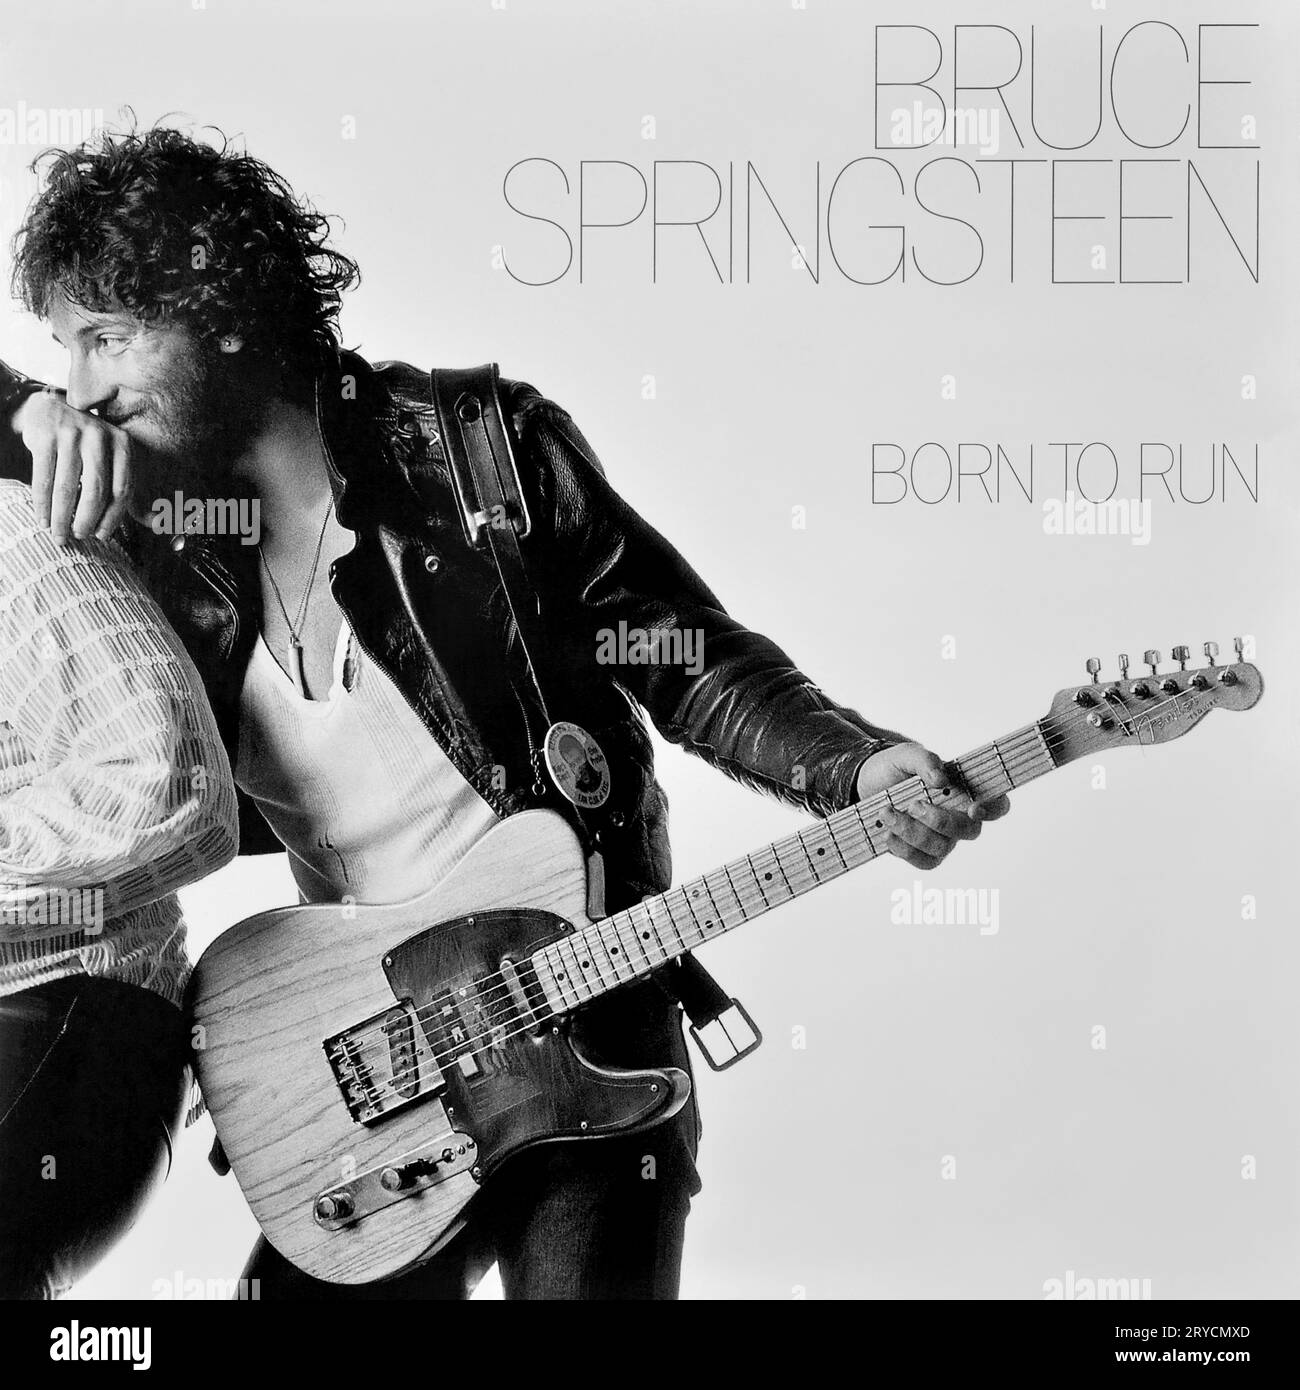 Bruce Springsteen - pochette originale de l'album vinyle - Born to Run - 1975 Banque D'Images